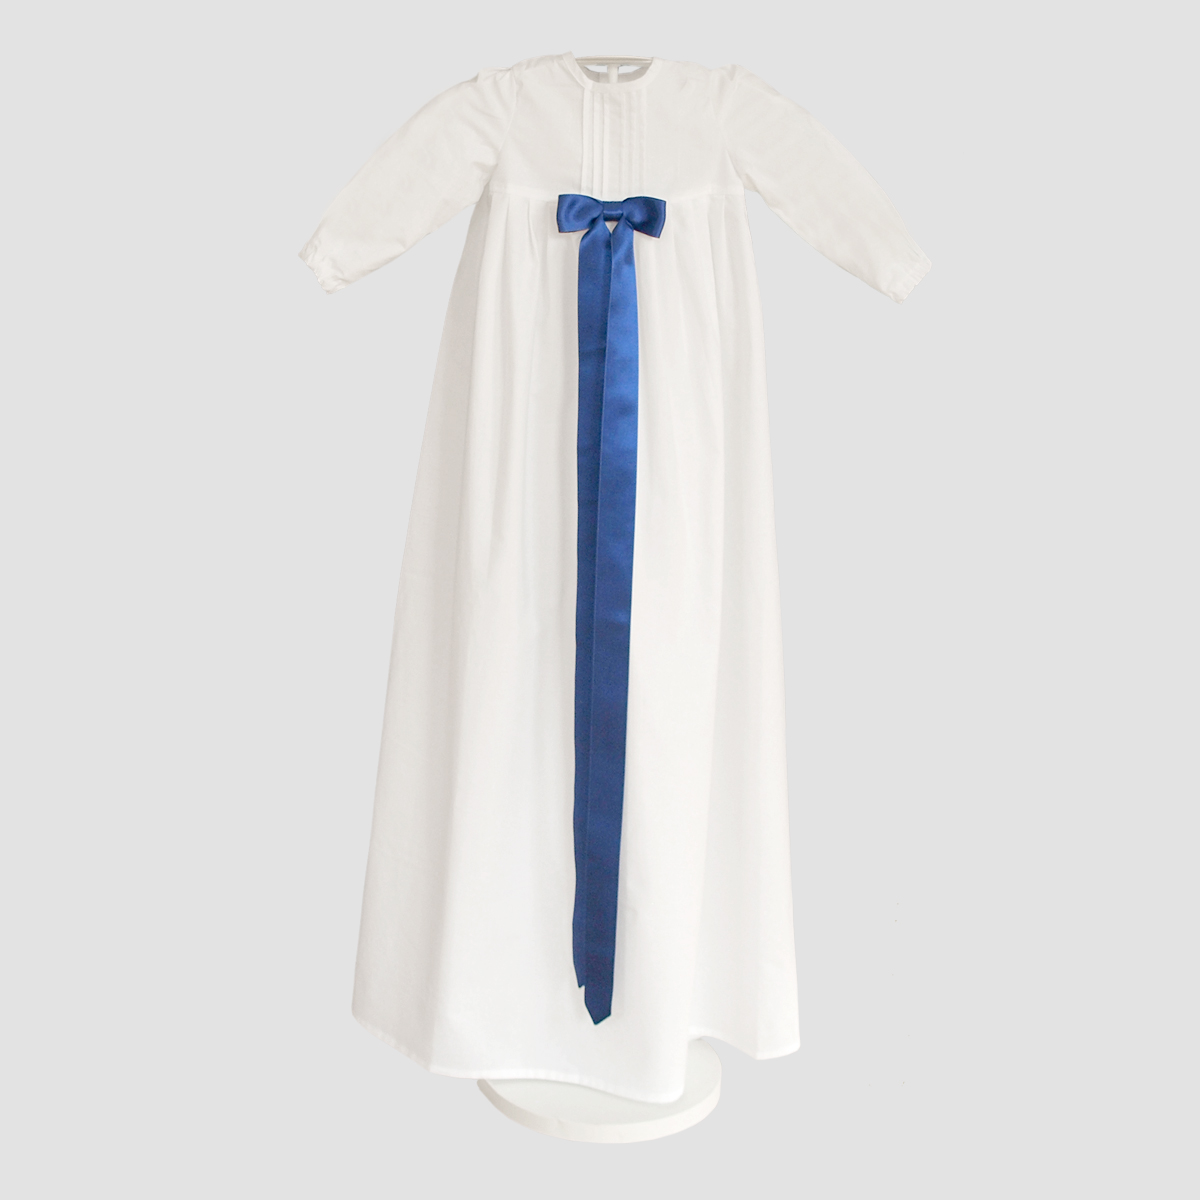 Minimundus dopklänning av 100% ekologisk bomull med breda kungsblå satinband